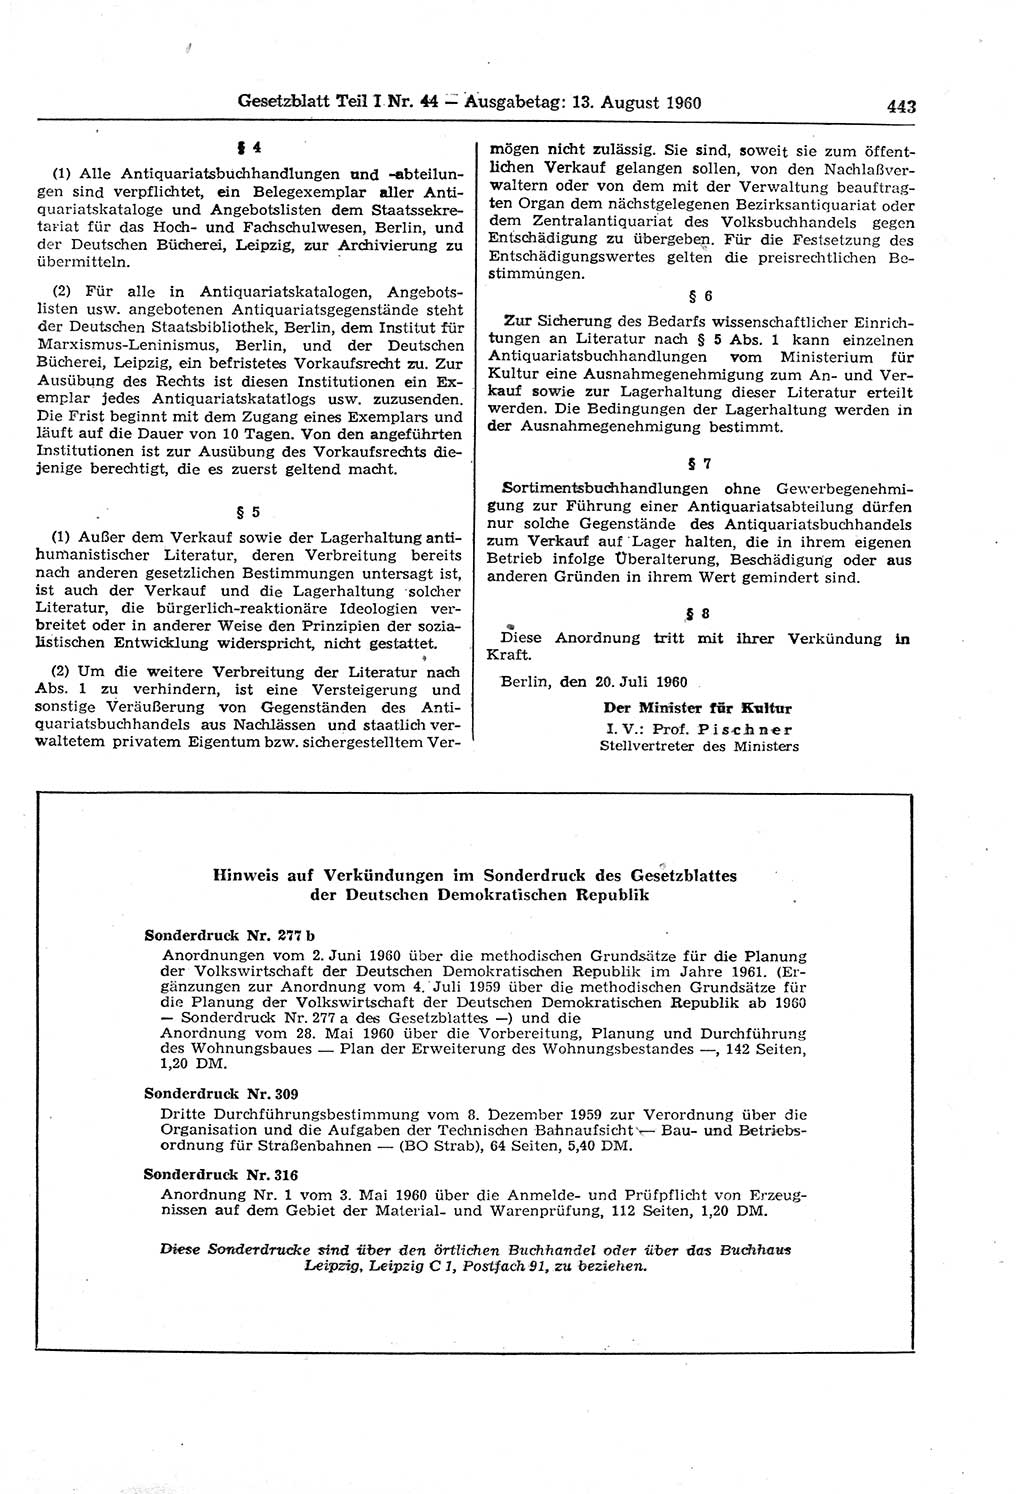 Gesetzblatt (GBl.) der Deutschen Demokratischen Republik (DDR) Teil Ⅰ 1960, Seite 443 (GBl. DDR Ⅰ 1960, S. 443)